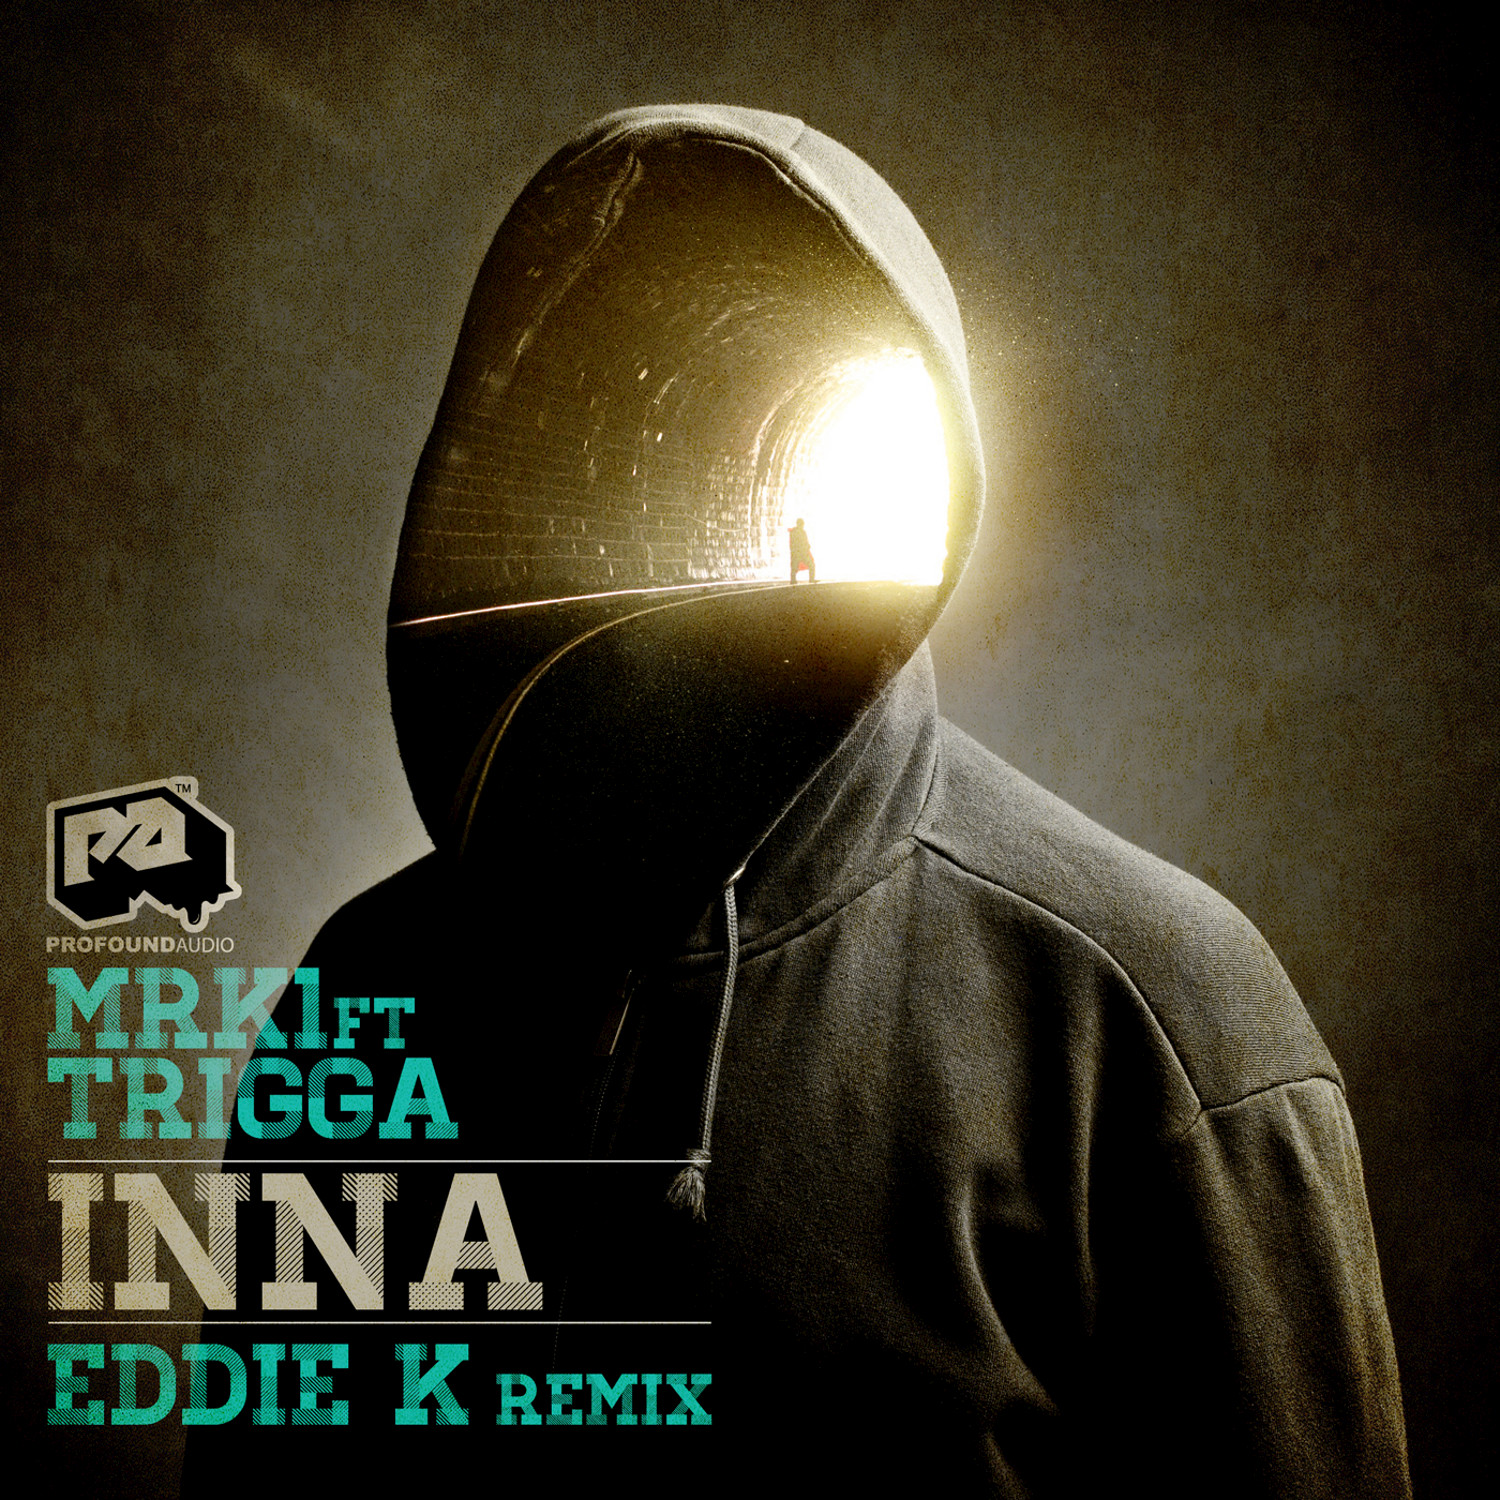 INNA / INNA (Eddie K D&B Remix)